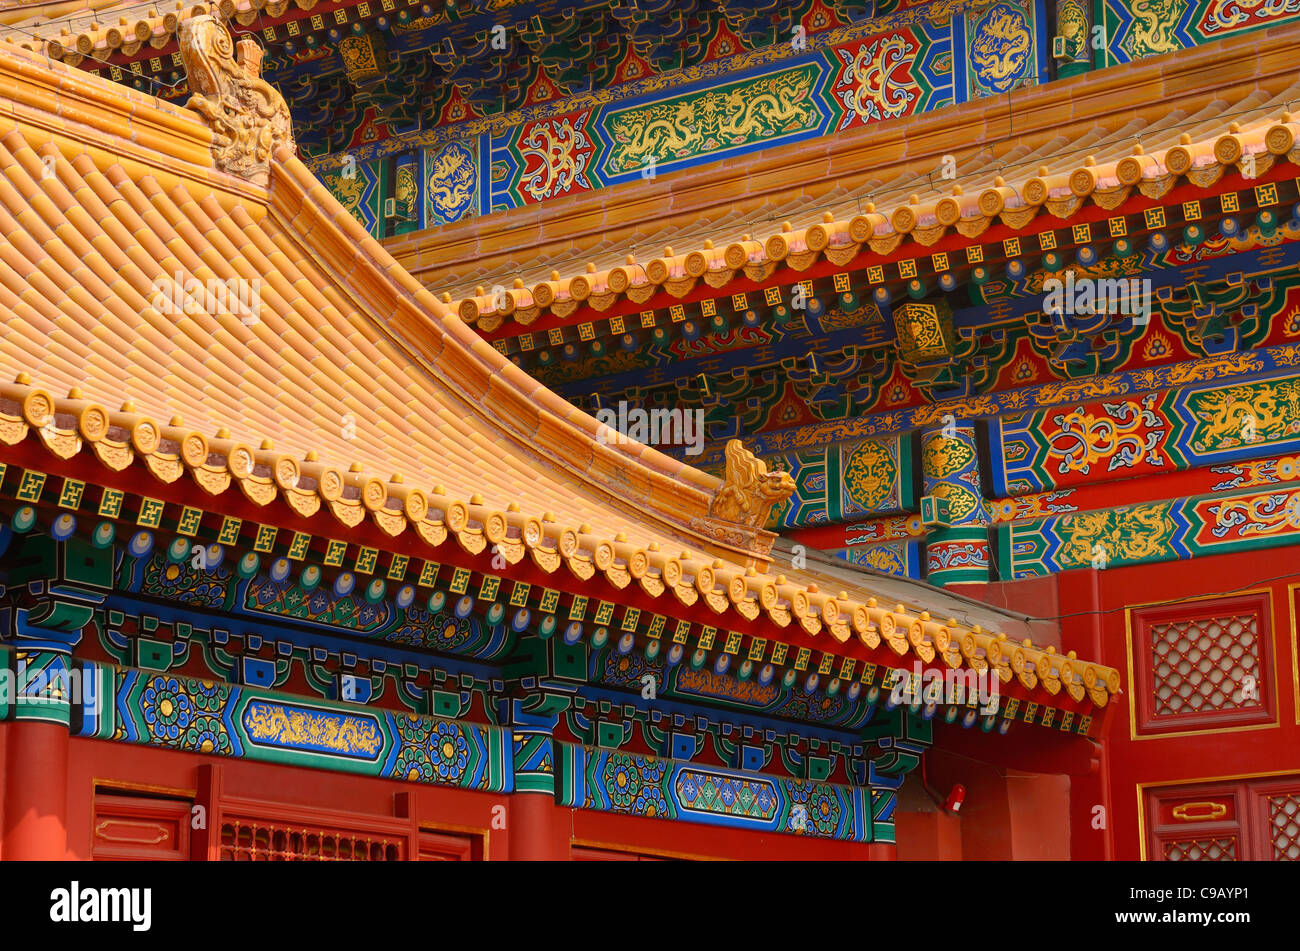 Hall de préserver l'harmonie détail de construction en bois peint et toit de tuiles Forbidden City Beijing République populaire de Chine Banque D'Images